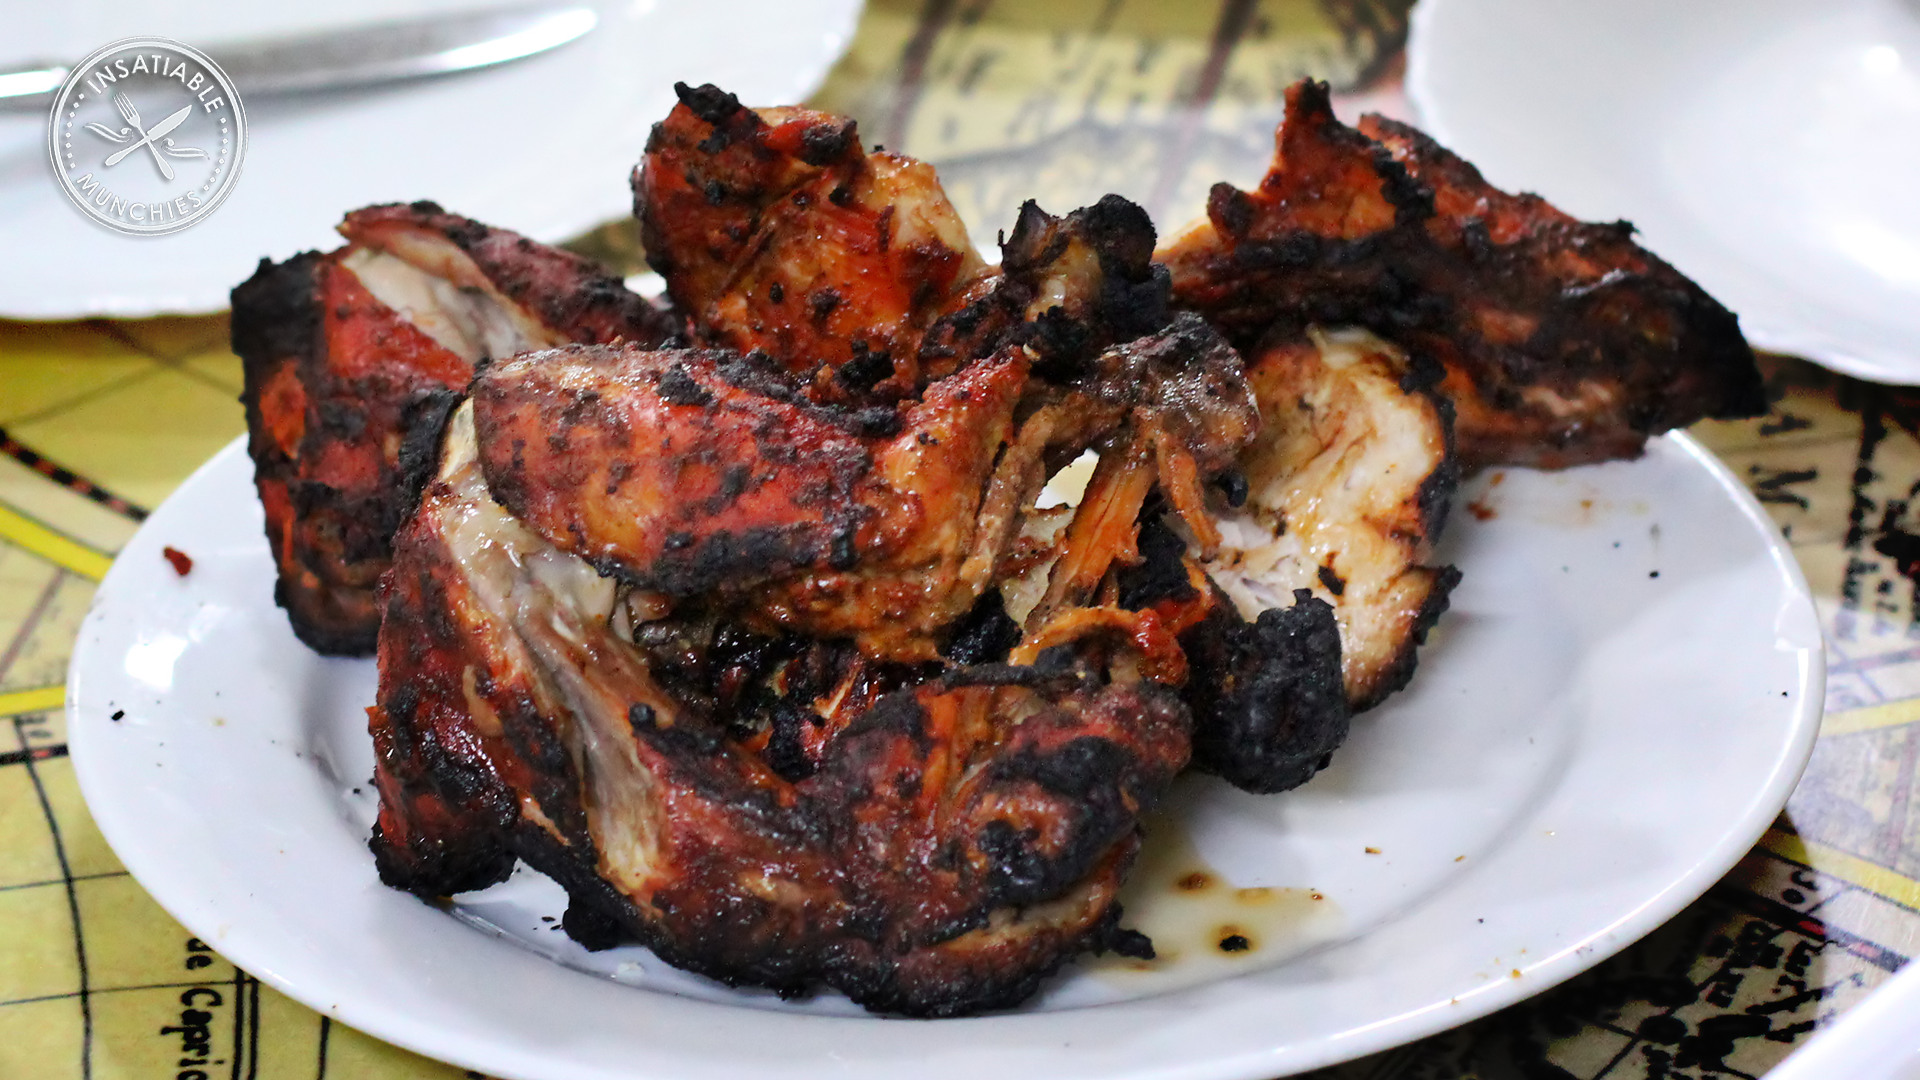 A full serving of tandoori chicken